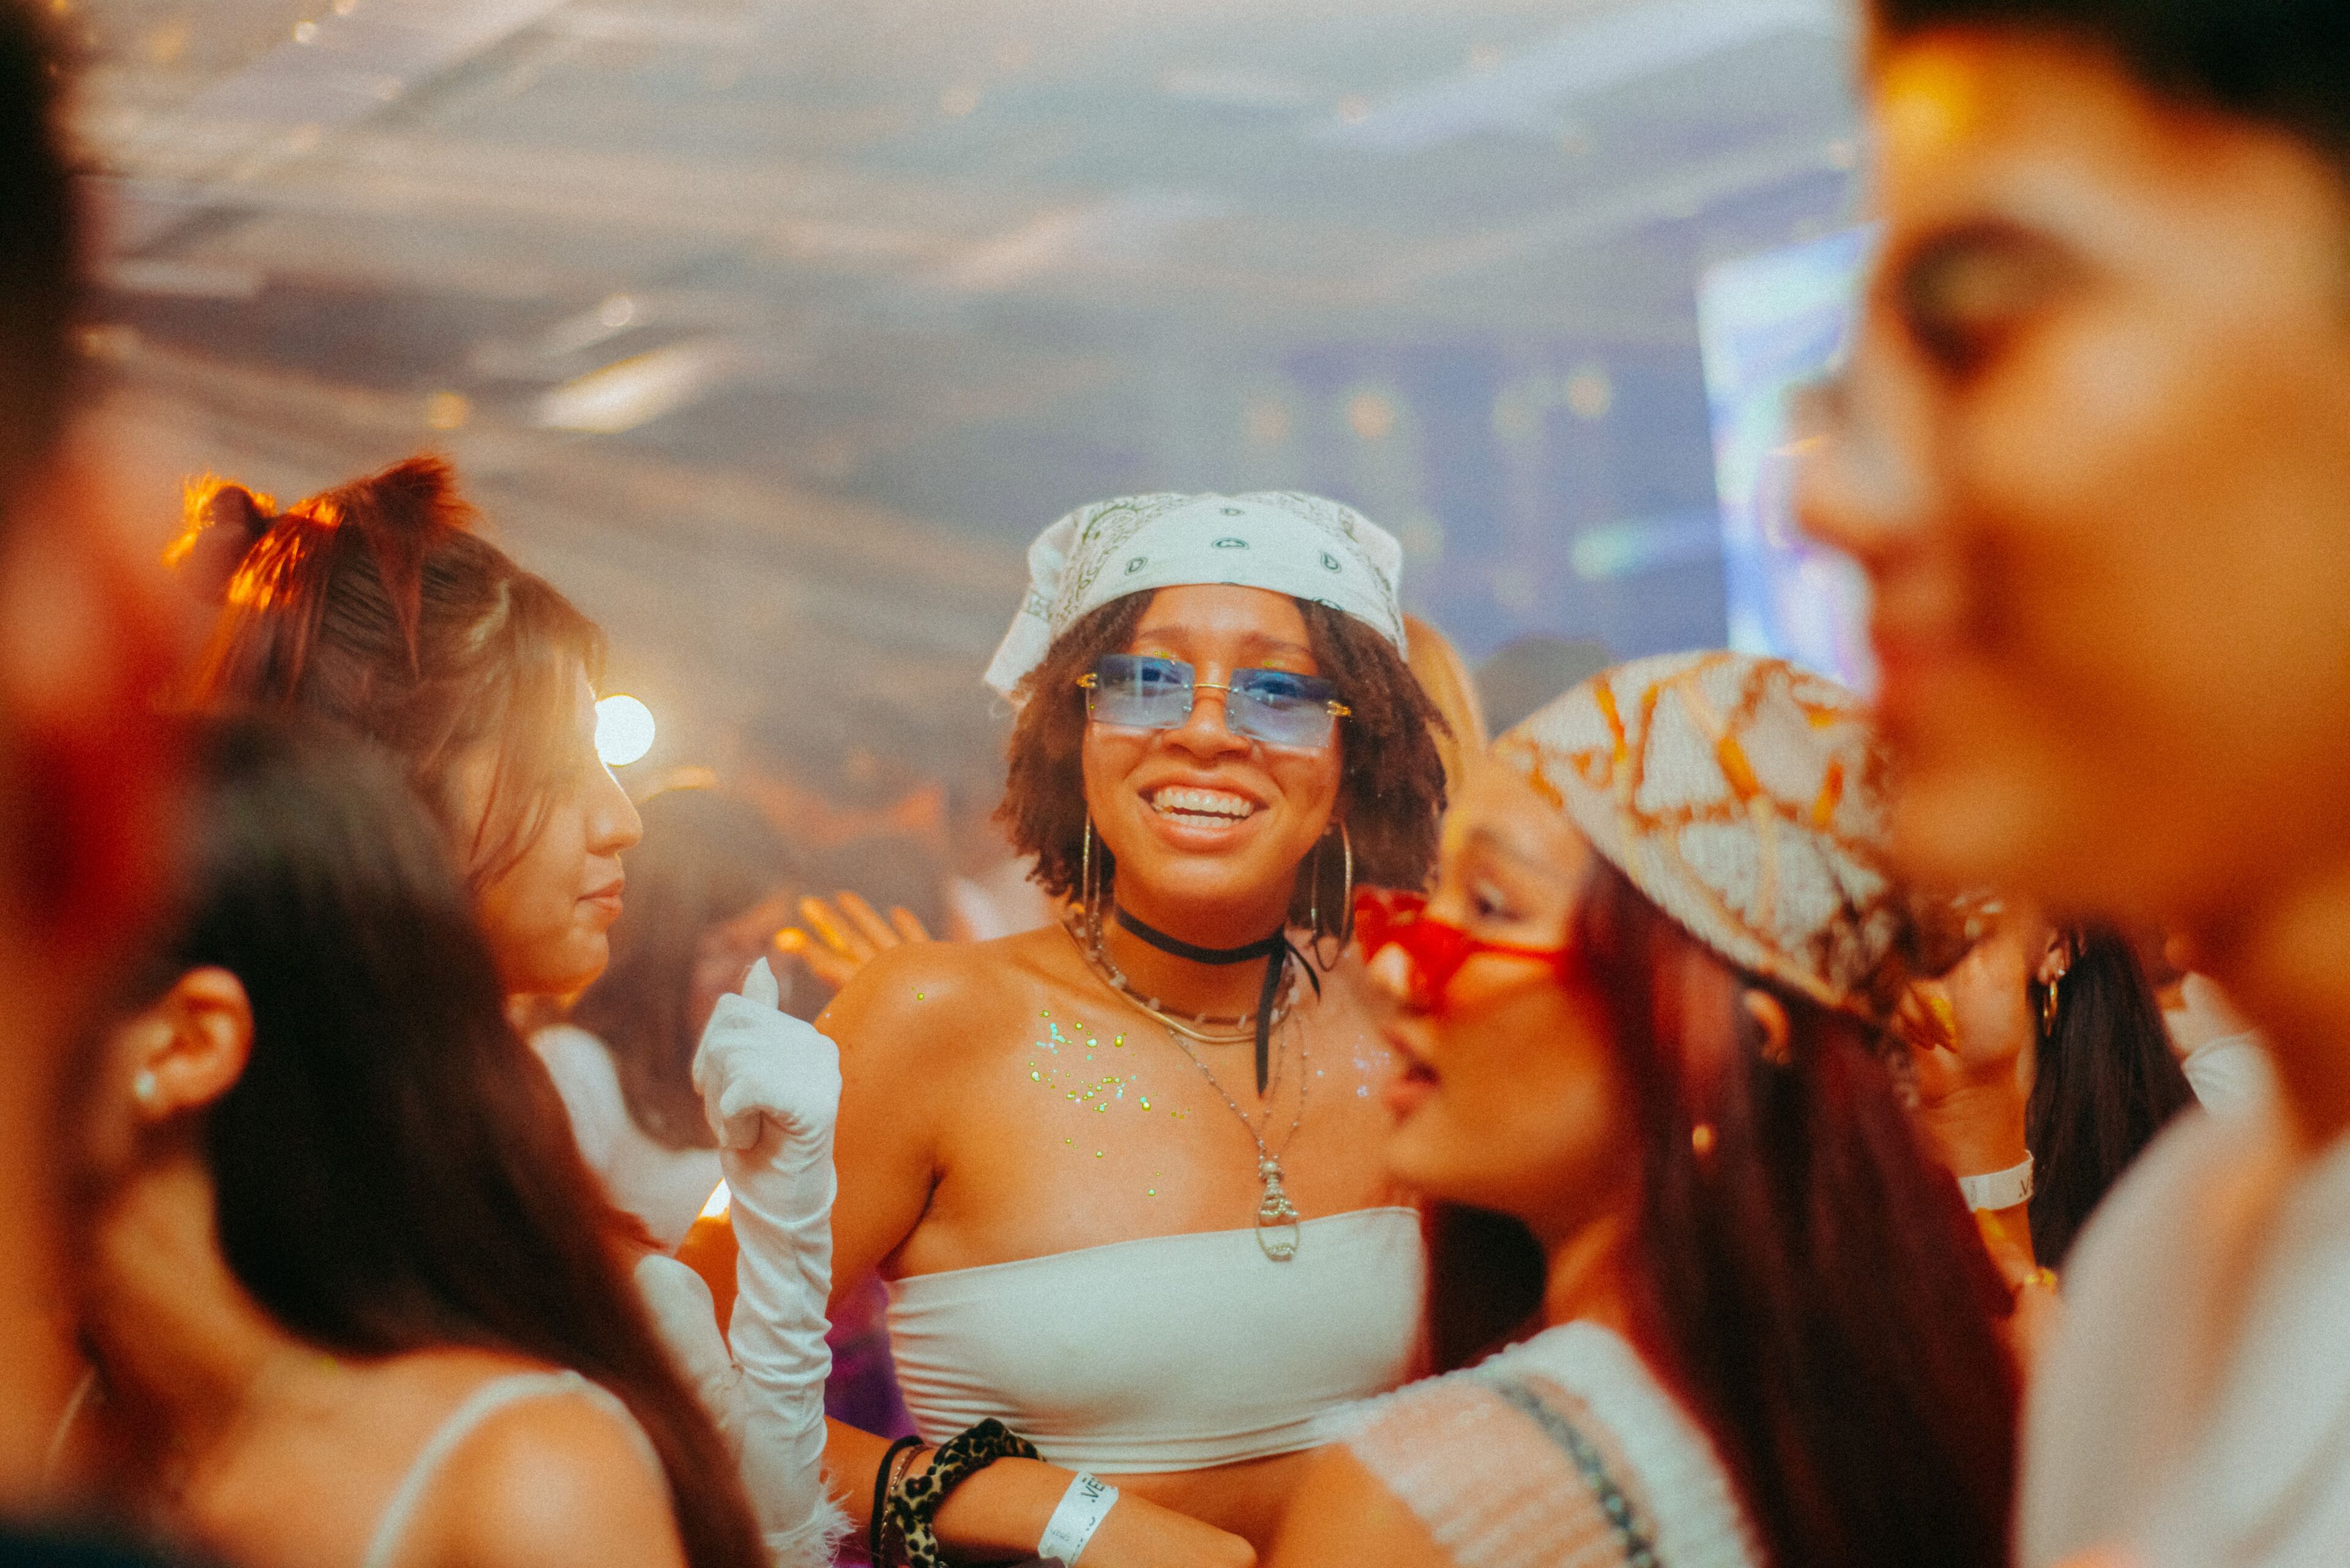 Una joven alegre con top blanco y bandana sonríe brillantemente, rodeada de amigos en una fiesta vibrante.